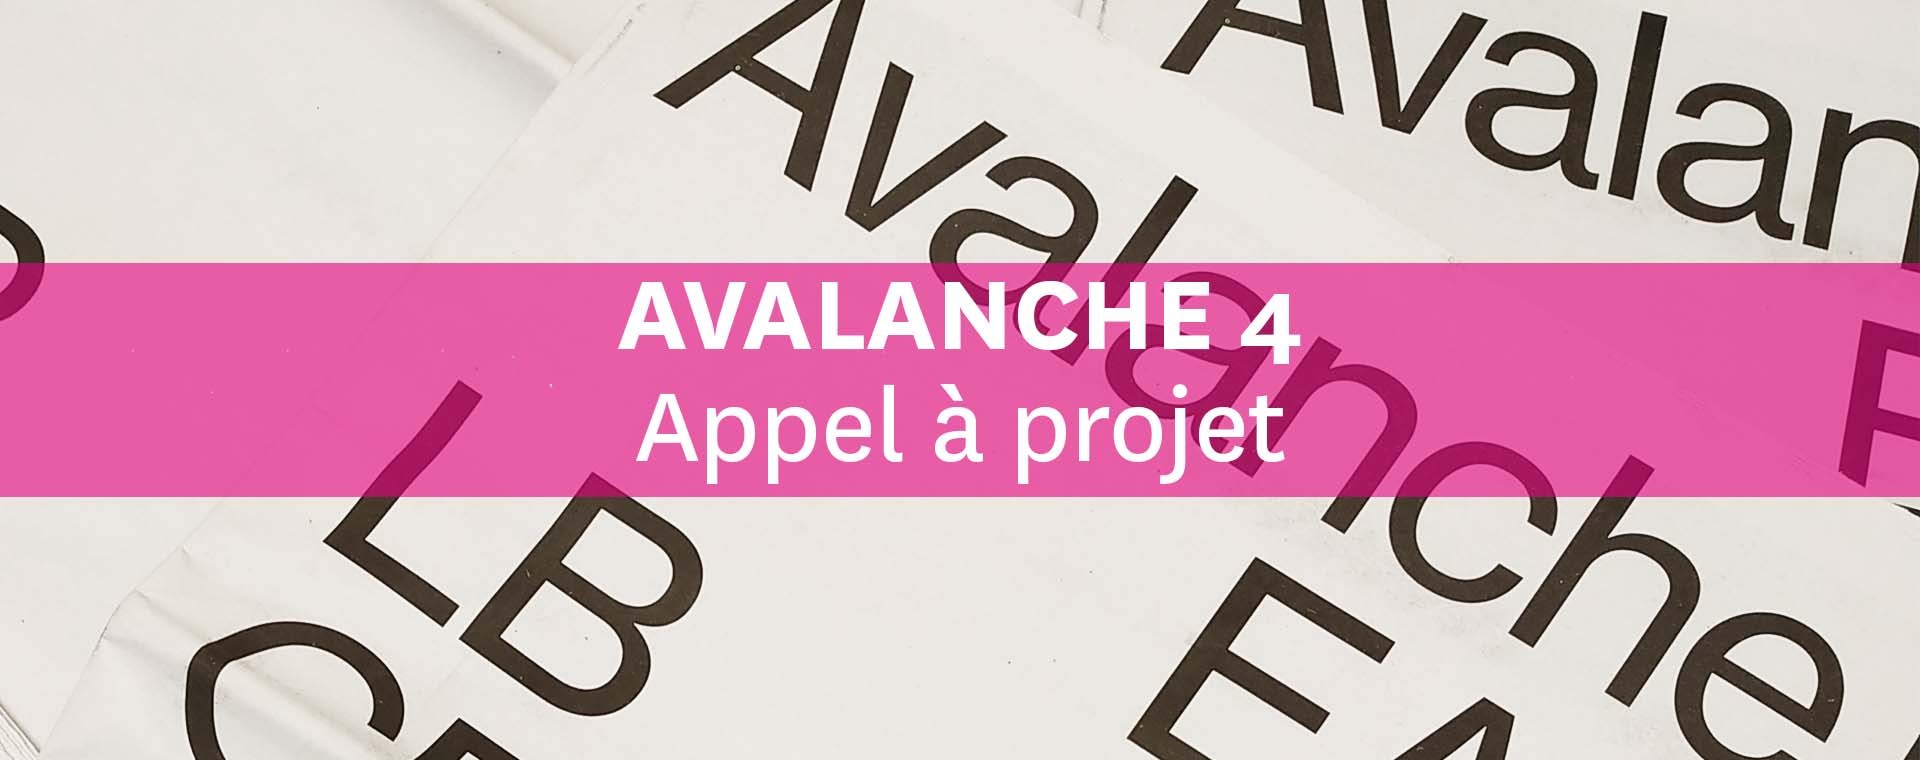 Appel à projet - “Avalanche 4”